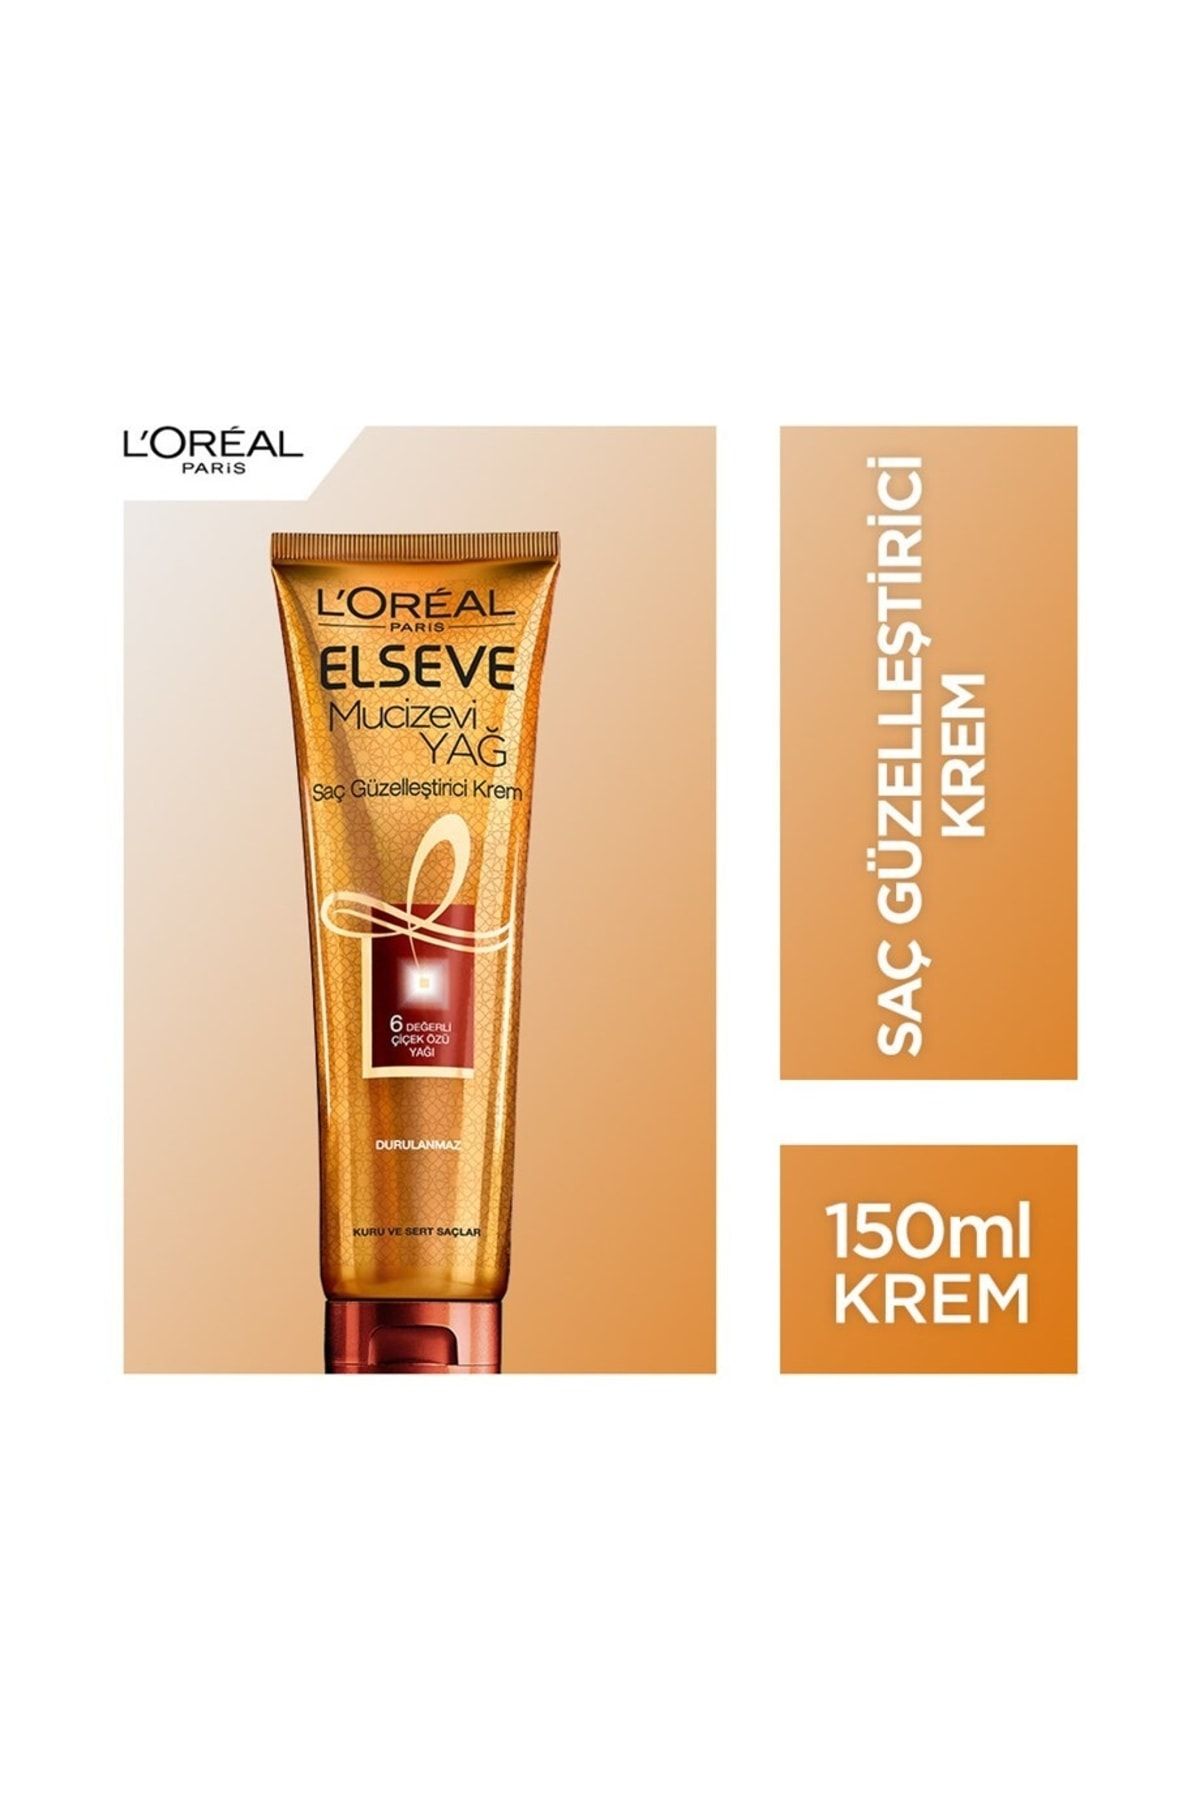 Elseve L'oréal Paris Mucizevi Yağ Saç Güzelleştirici Krem 150 Ml